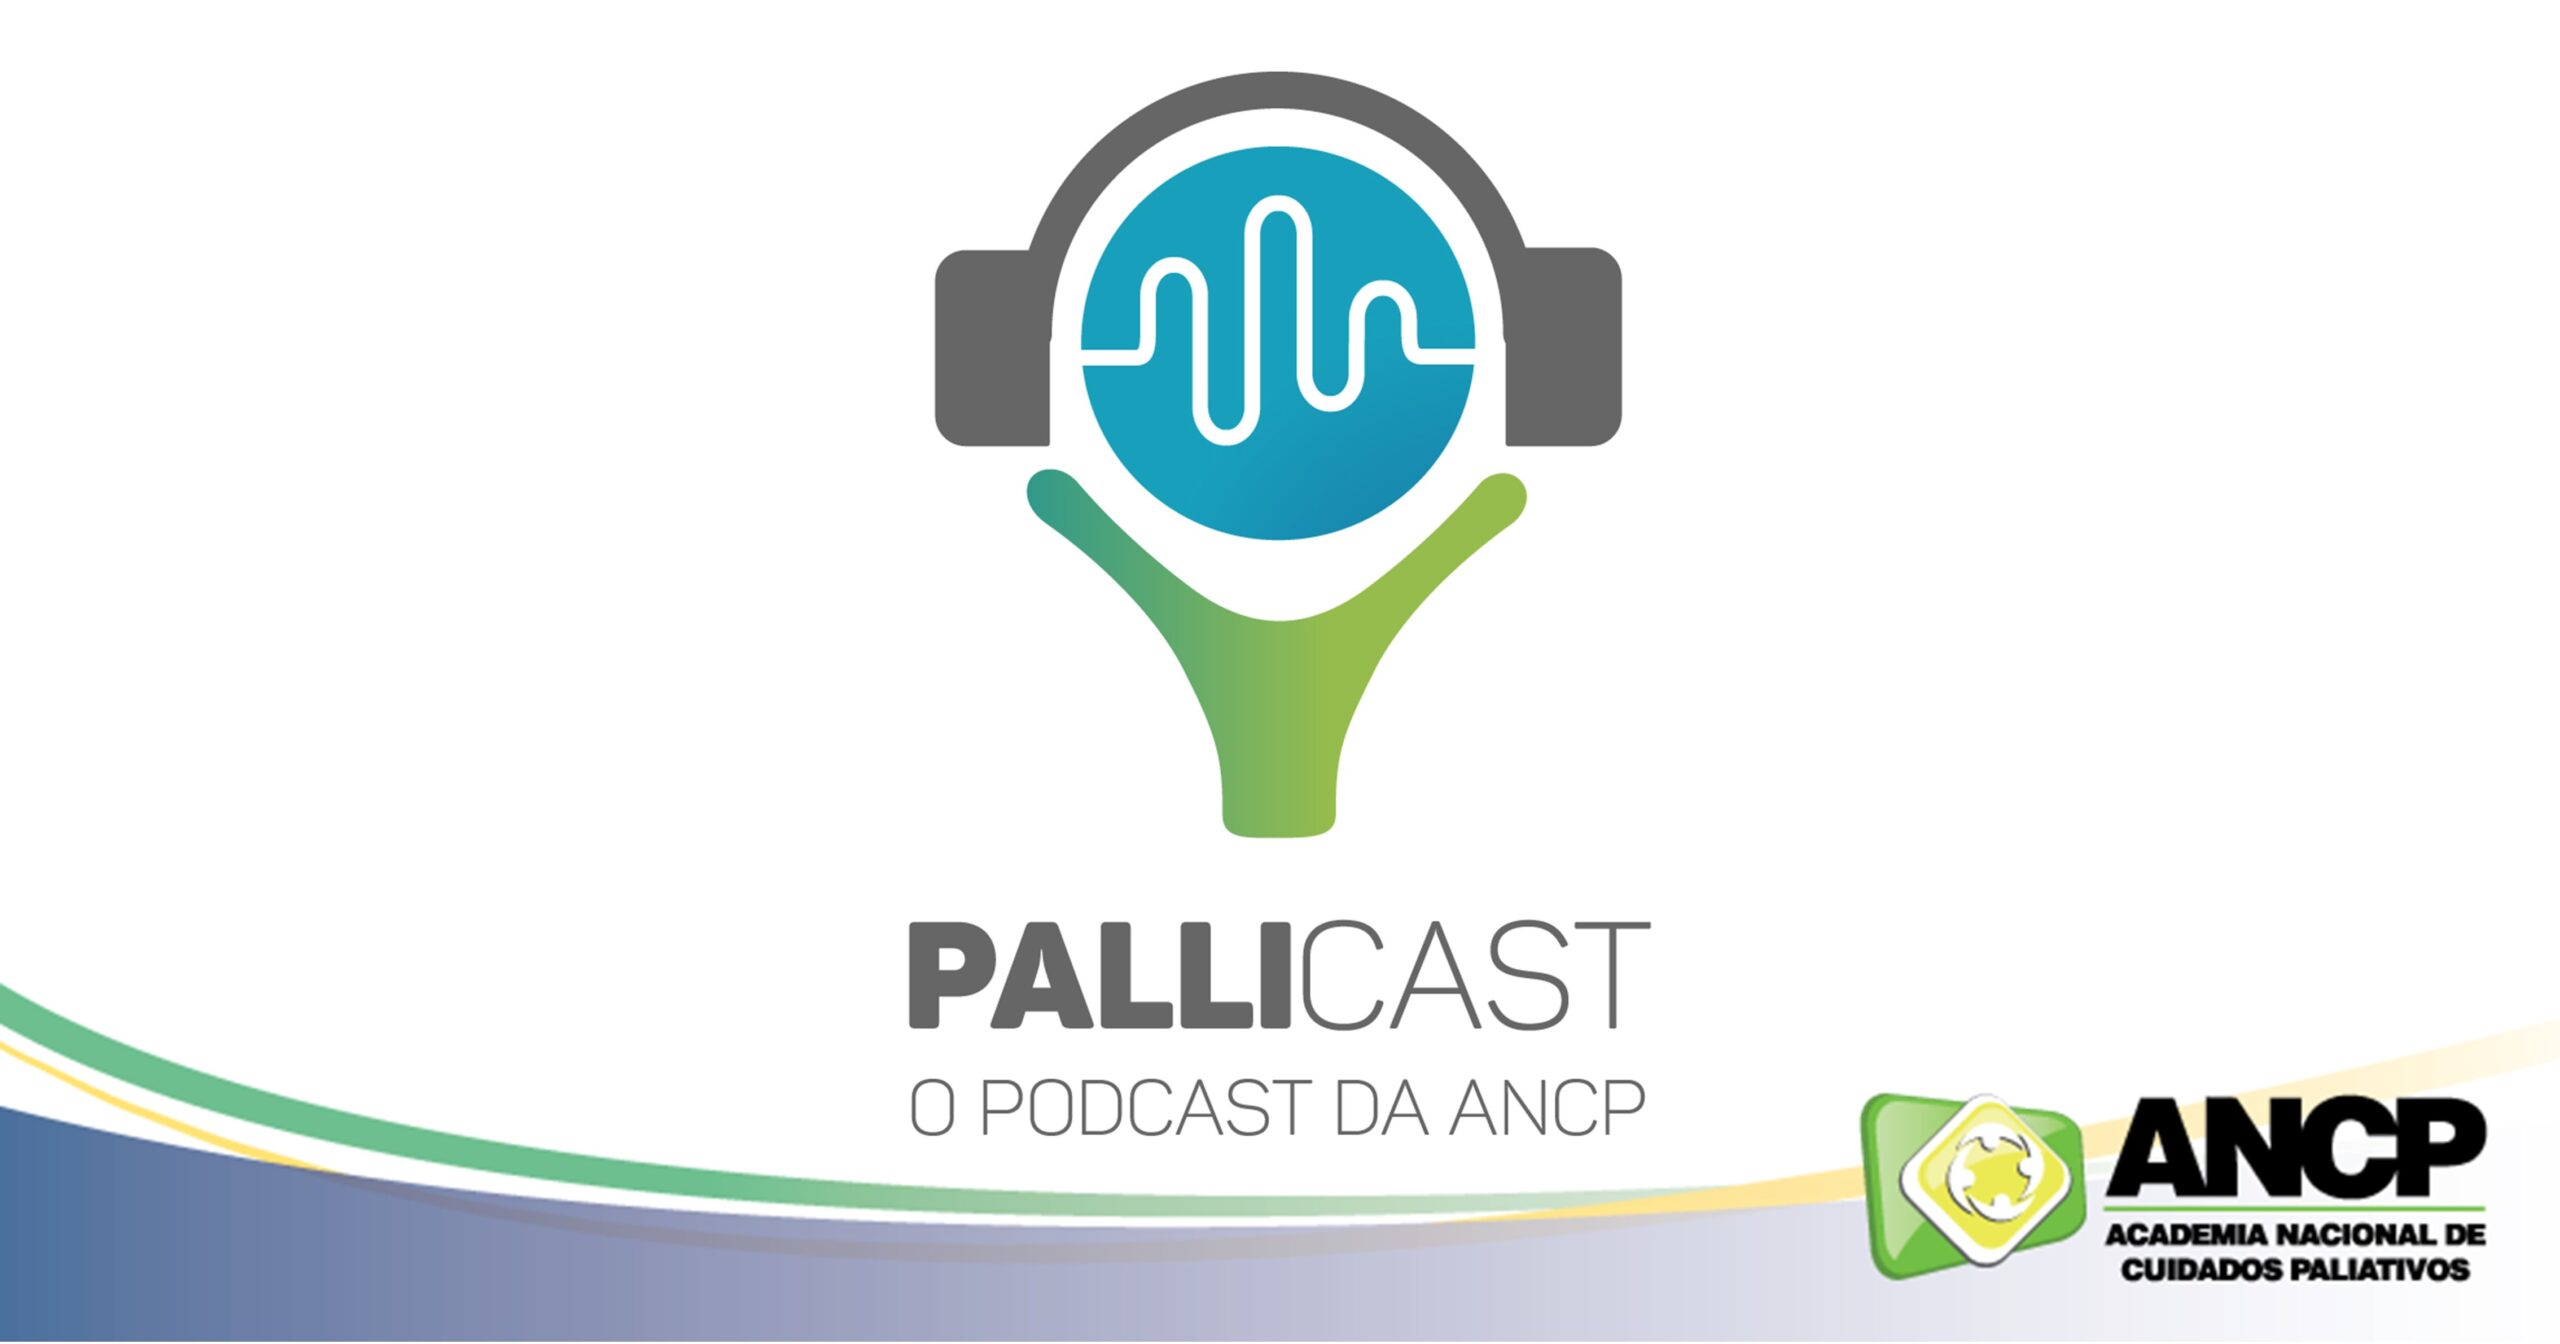 Comitê de Inovação realiza pesquisa sobre o PalliCast, o PodCast da ANCP